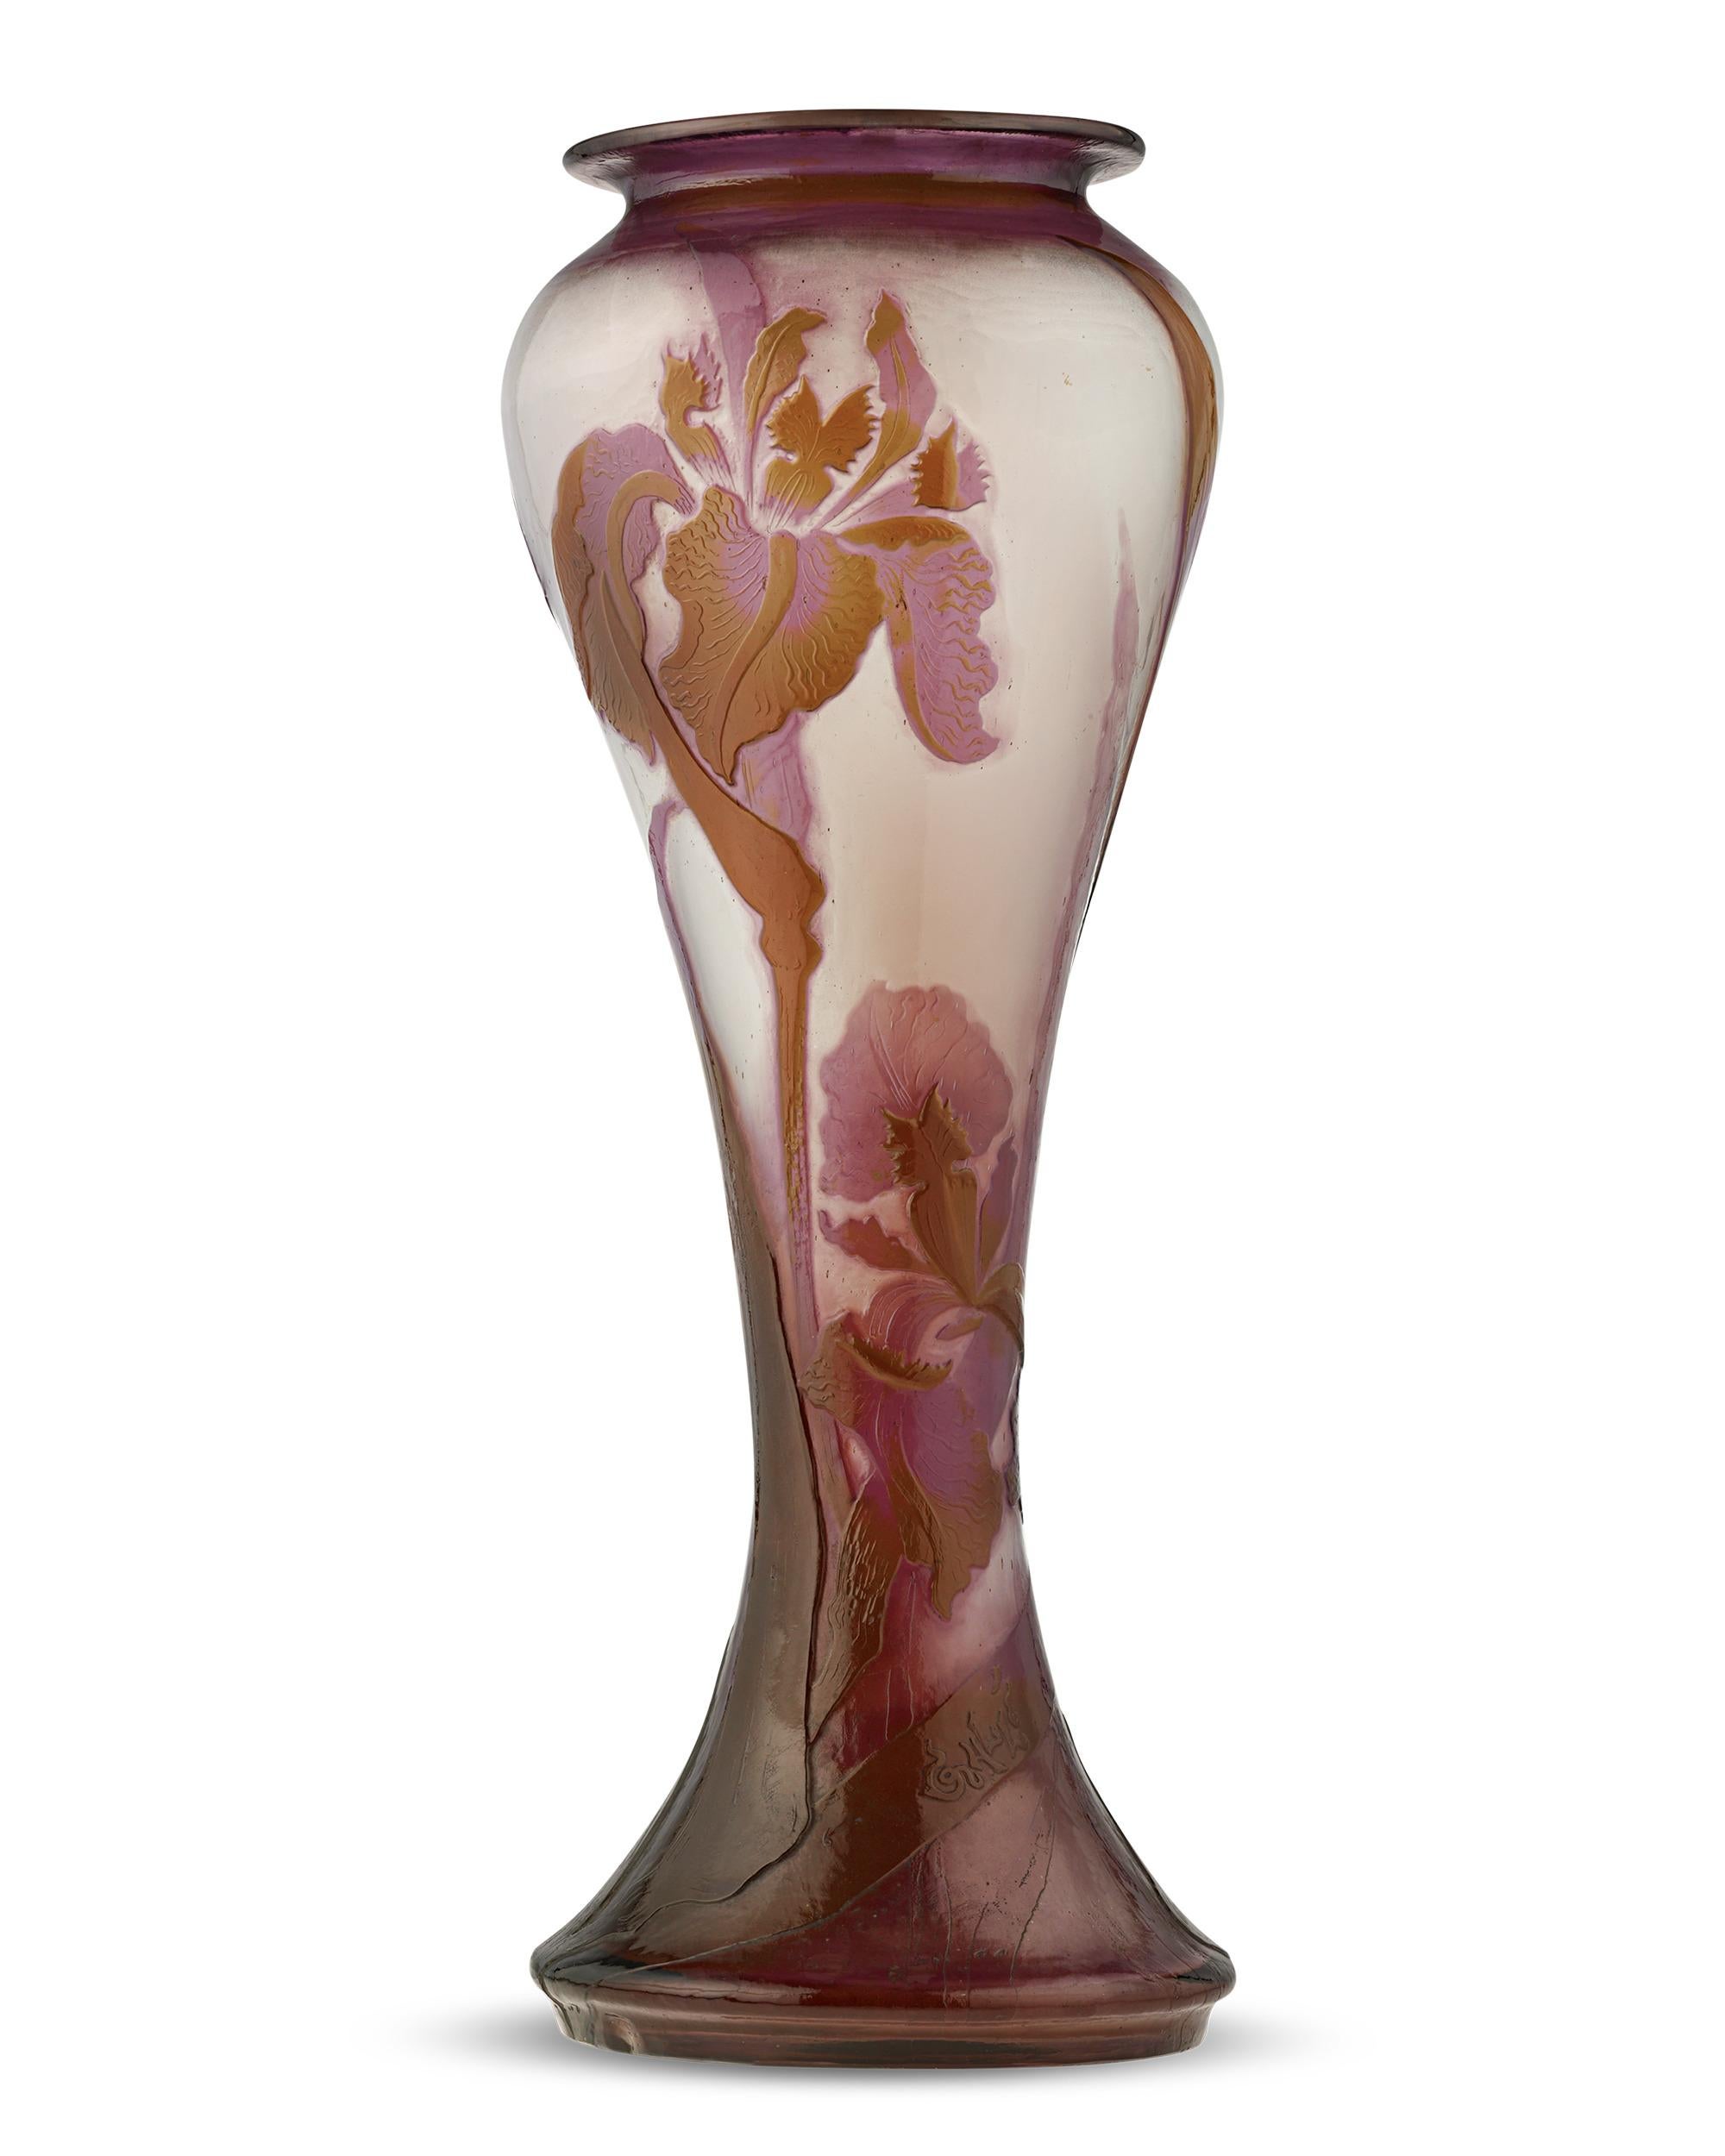 Exceptionnel par sa taille et sa qualité artistique, ce vase en verre d'art camée poli au sable est l'œuvre du célèbre maître de l'Art nouveau Émile Gallé, l'un des noms les plus réputés de la verrerie française. L'amour de l'artiste pour la Nature